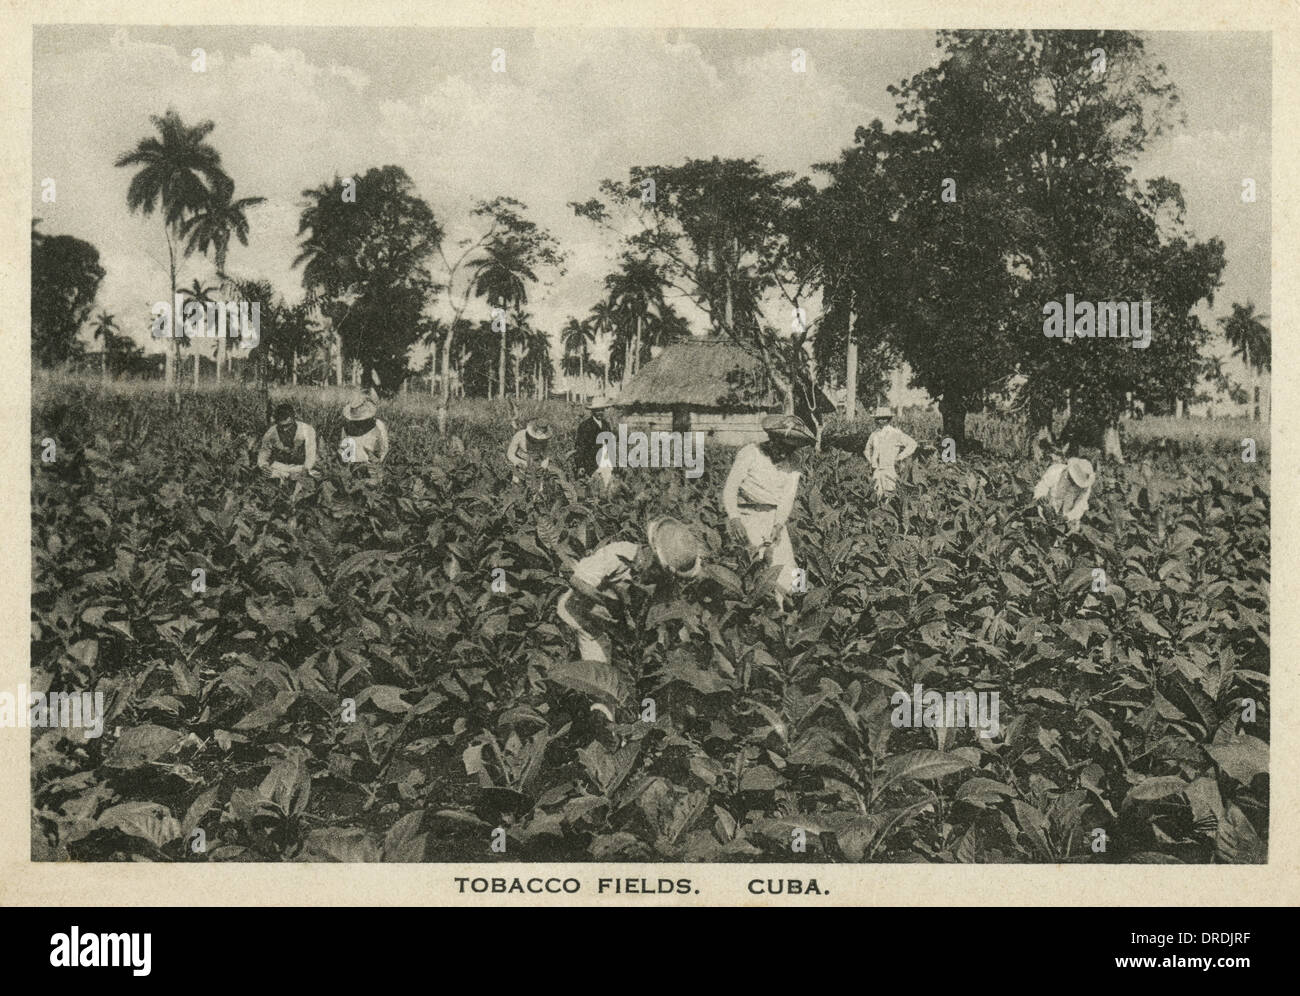 Tobacco Fields, Cuba Stock Photo - Alamy